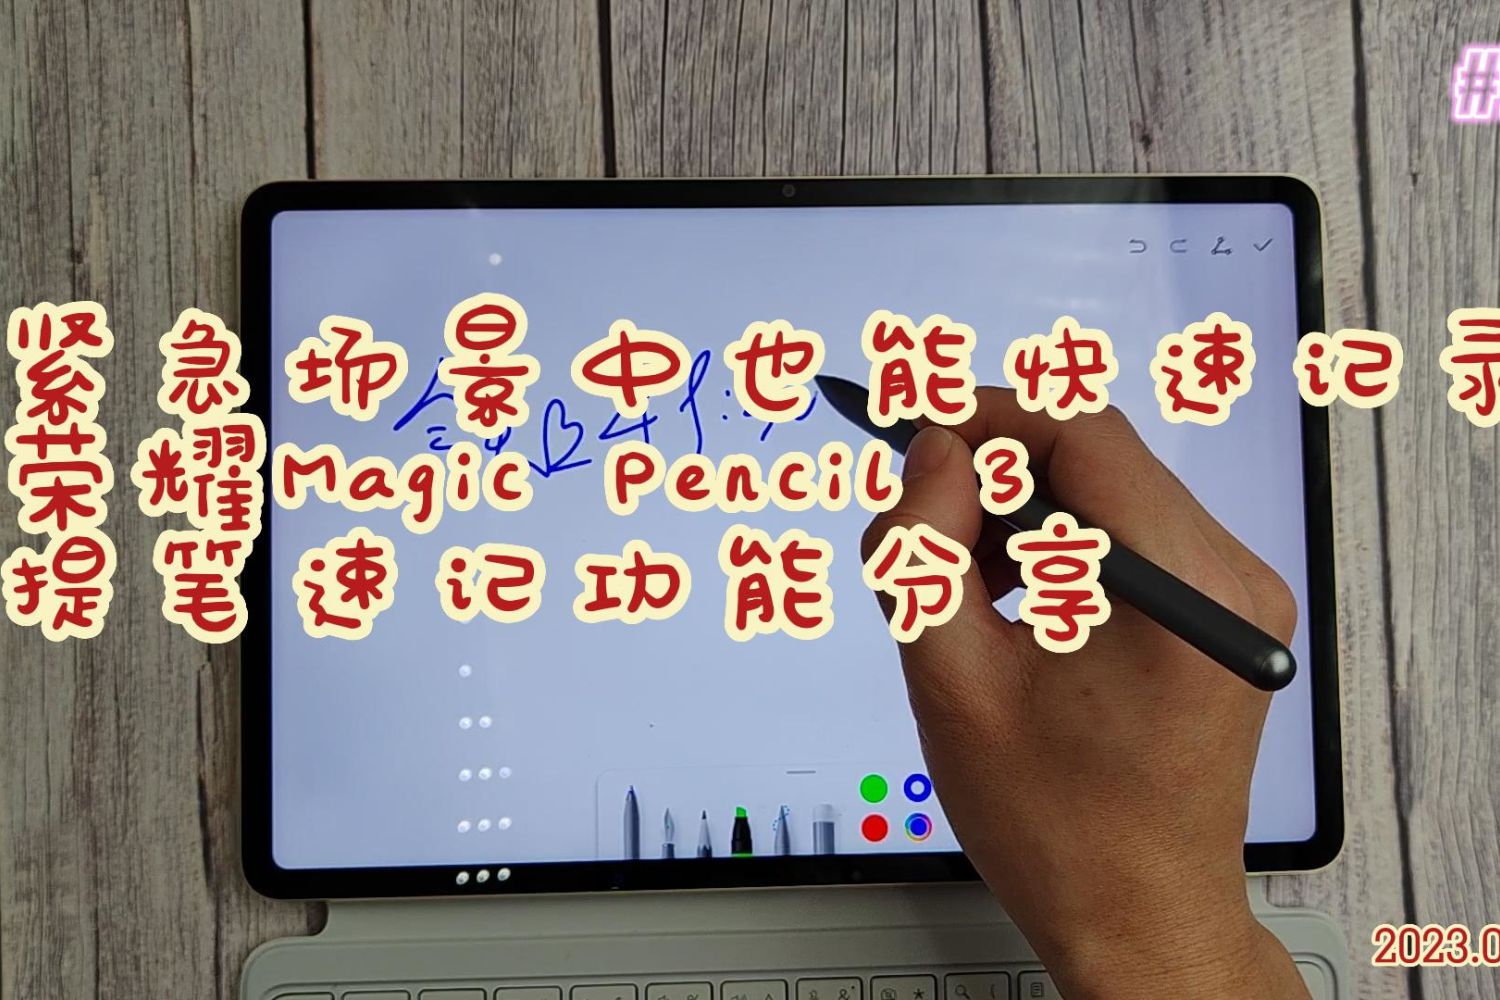 荣耀Magic Pencil 3提笔速记功能分享